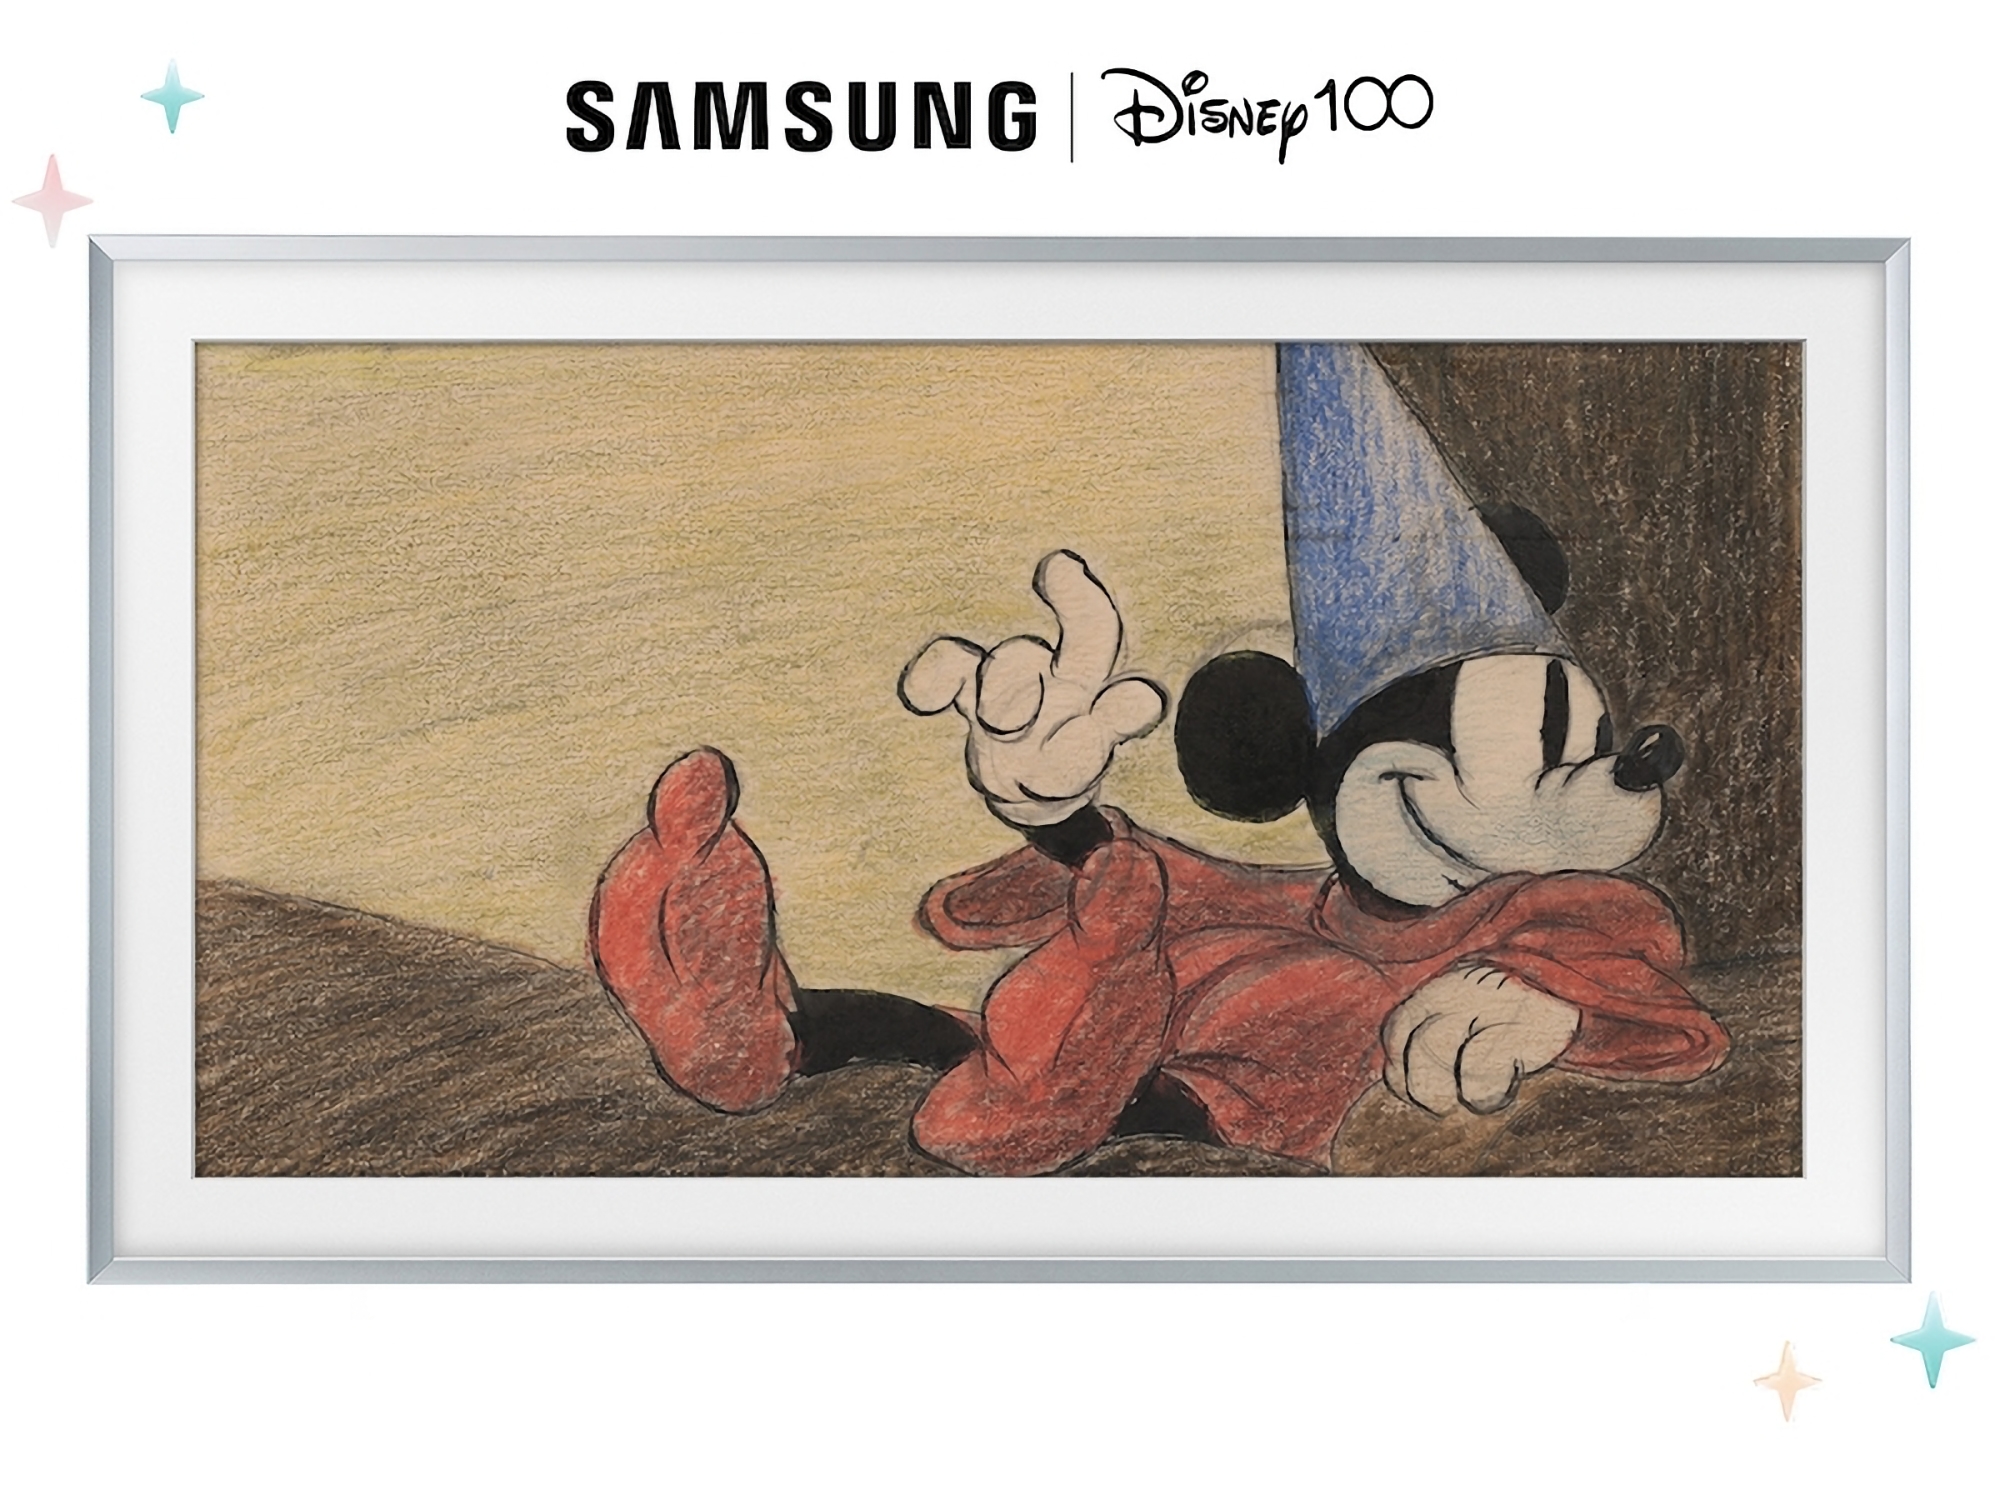 Samsung zaprezentował limitowaną serię telewizorów Frame, aby uczcić 100. rocznicę powstania The Walt Disney Company.